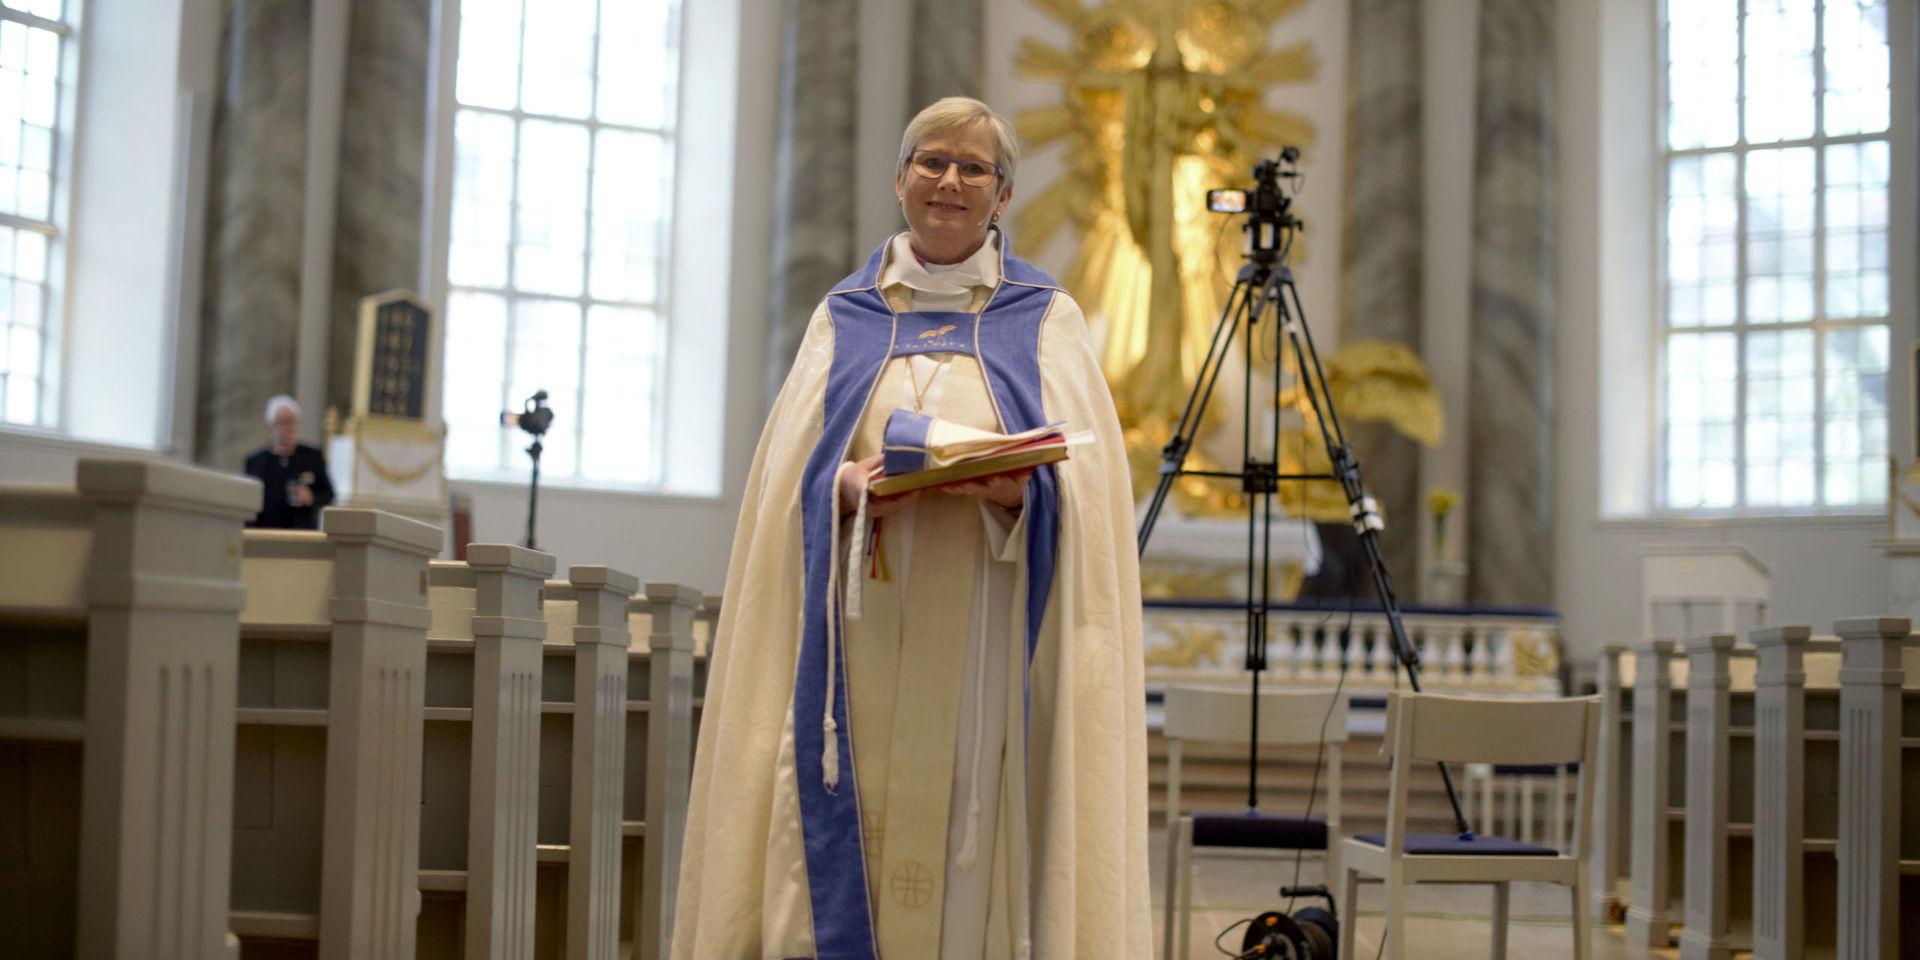 Göteborgs biskop Susanne Rappmann ledde påskdagsmässan i domkyrkan inför tomma bänkar.